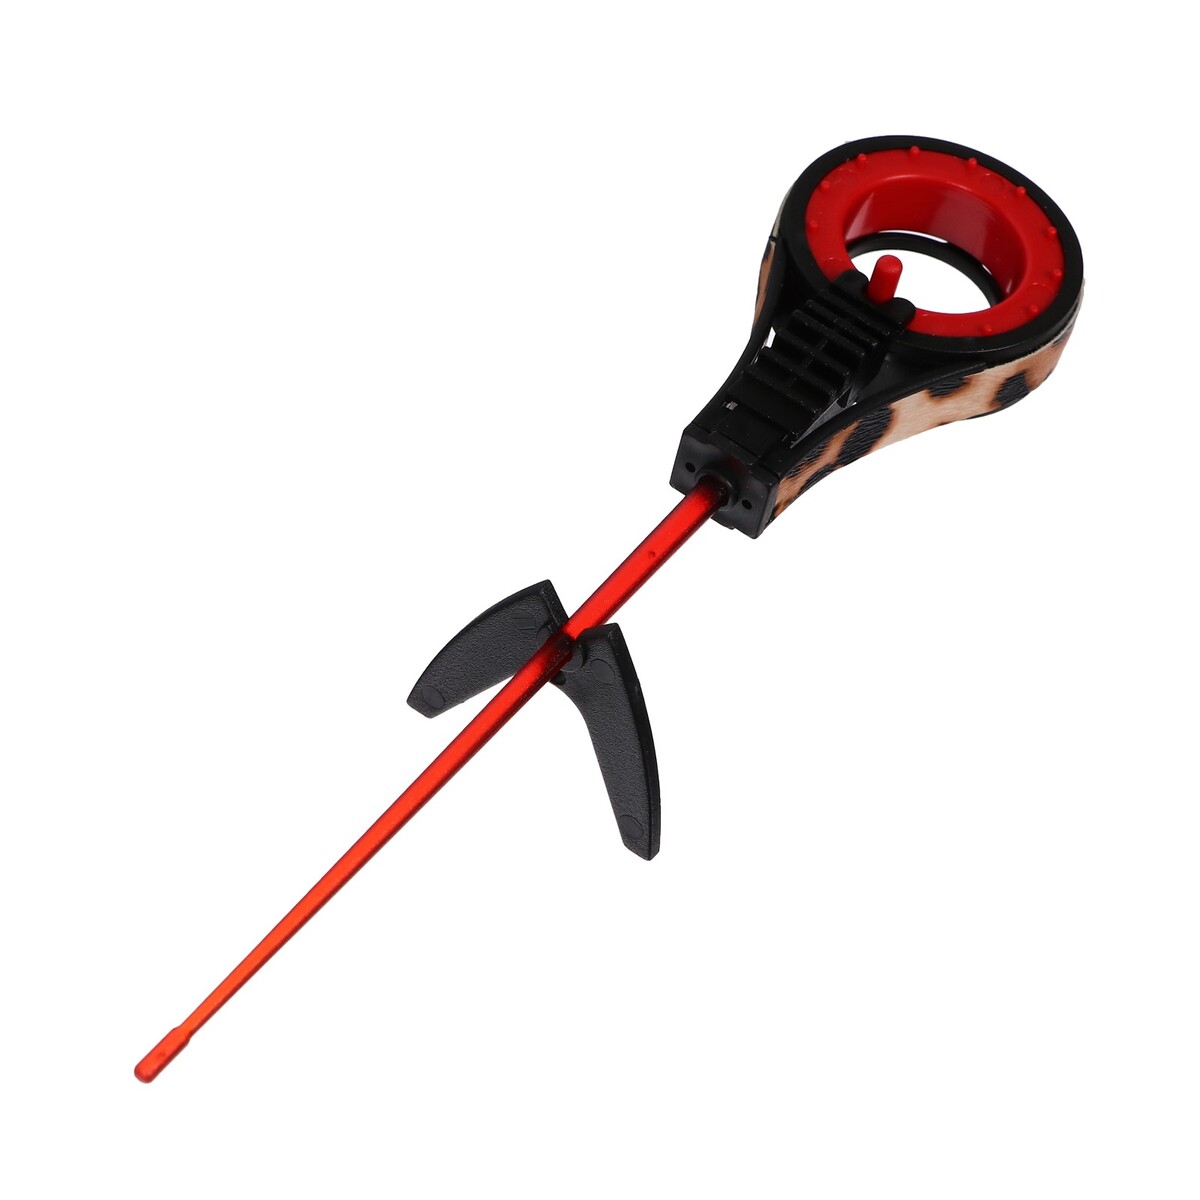 Удочка зимняя балалайка со сторожком, цвет черный красный, hfb-37 удочка зимняя пластик с неопреновой ручкой 40 см